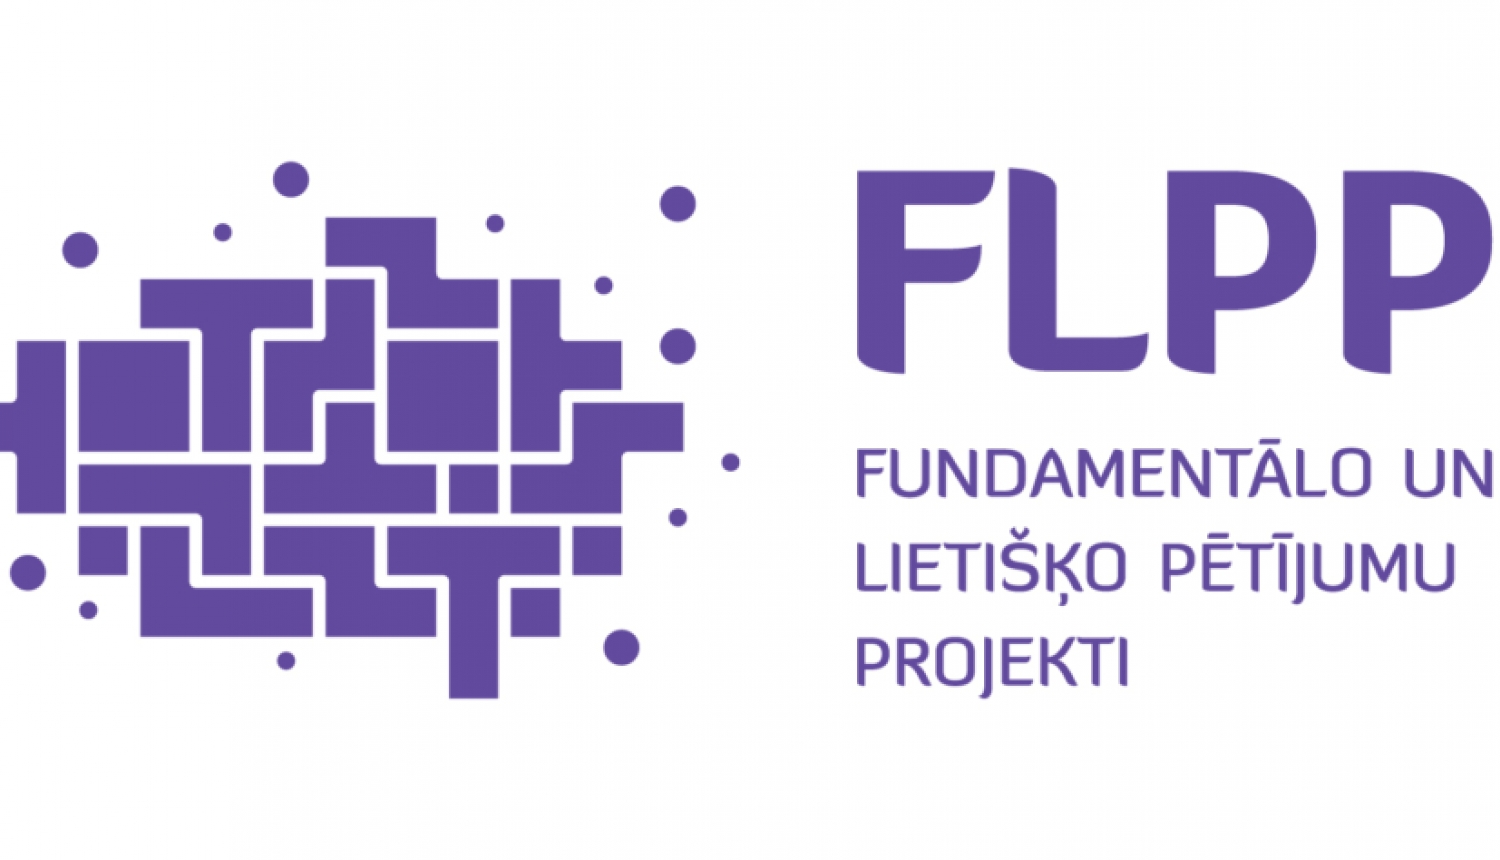 Fundamentālo un lietišķo pētījumu projekti (FLPP) logo